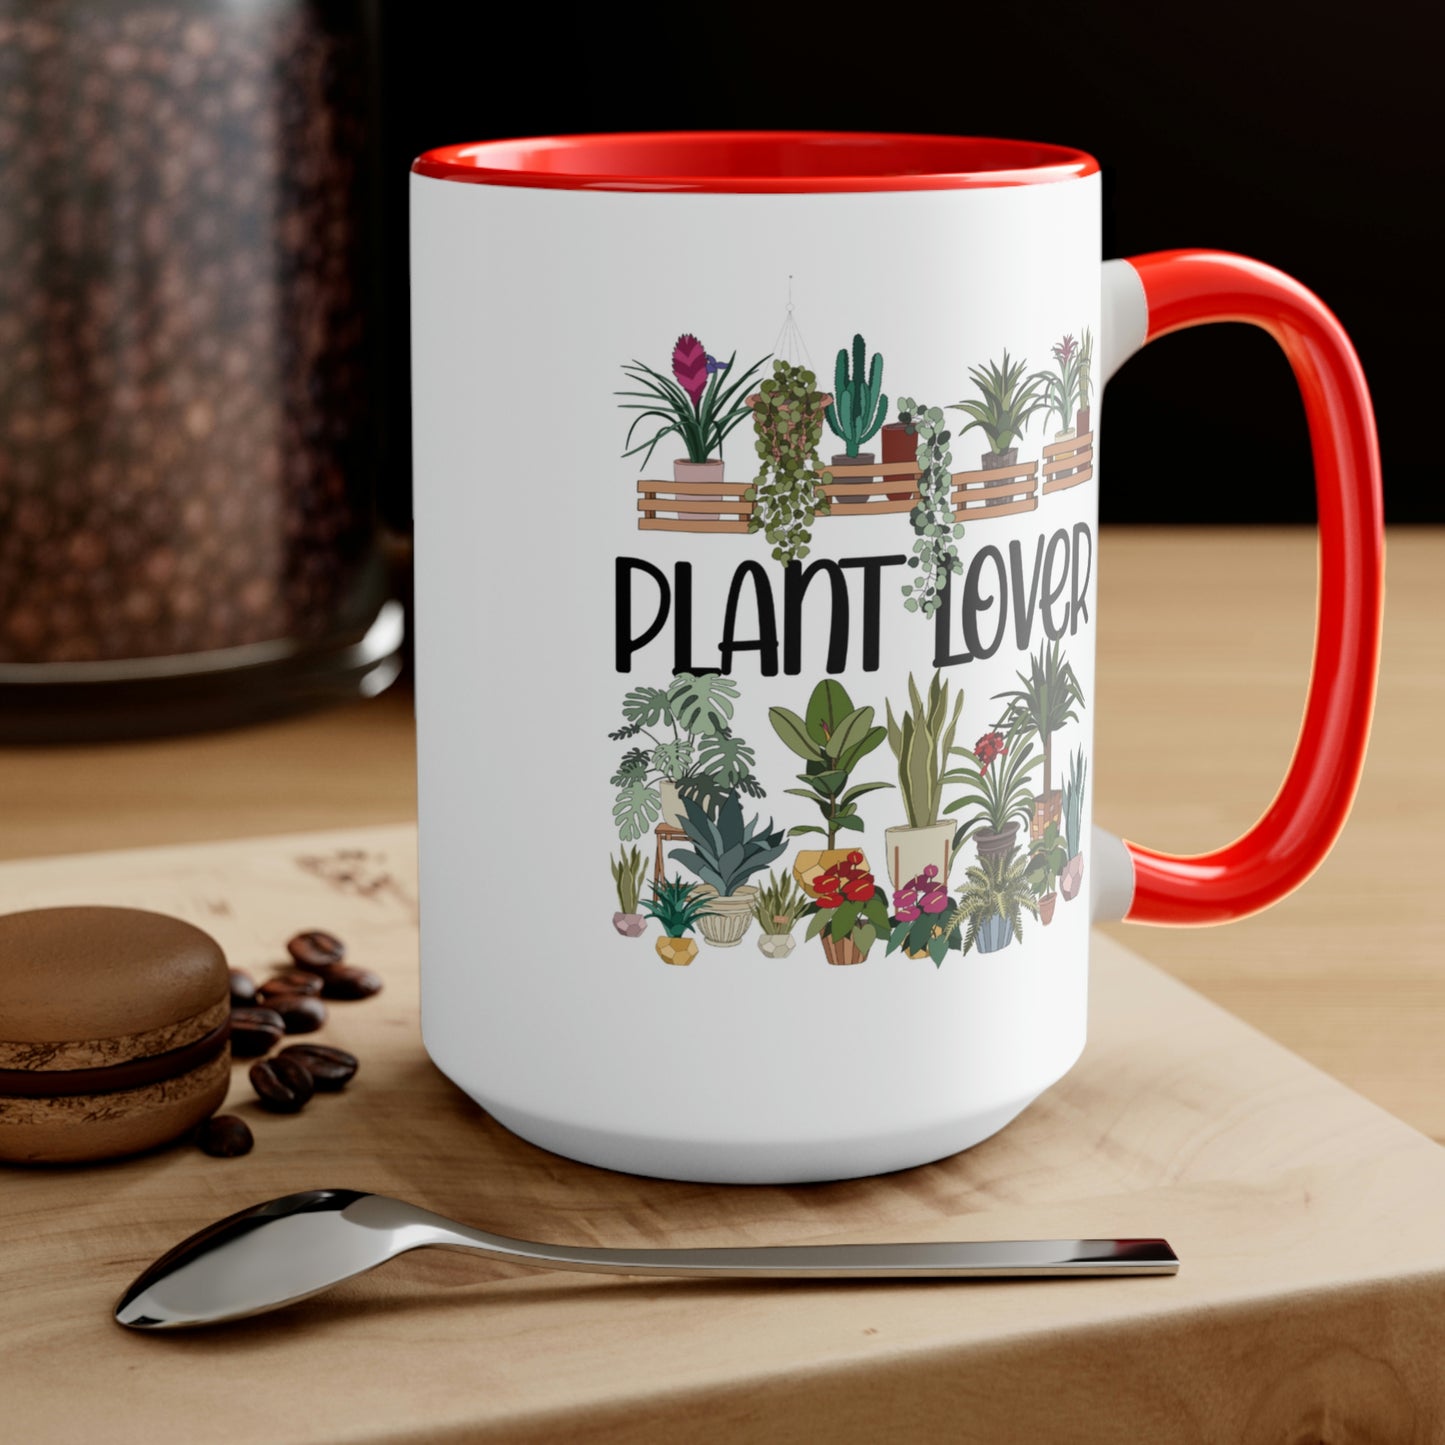 Plant lover Coffee Mugs, 15oz